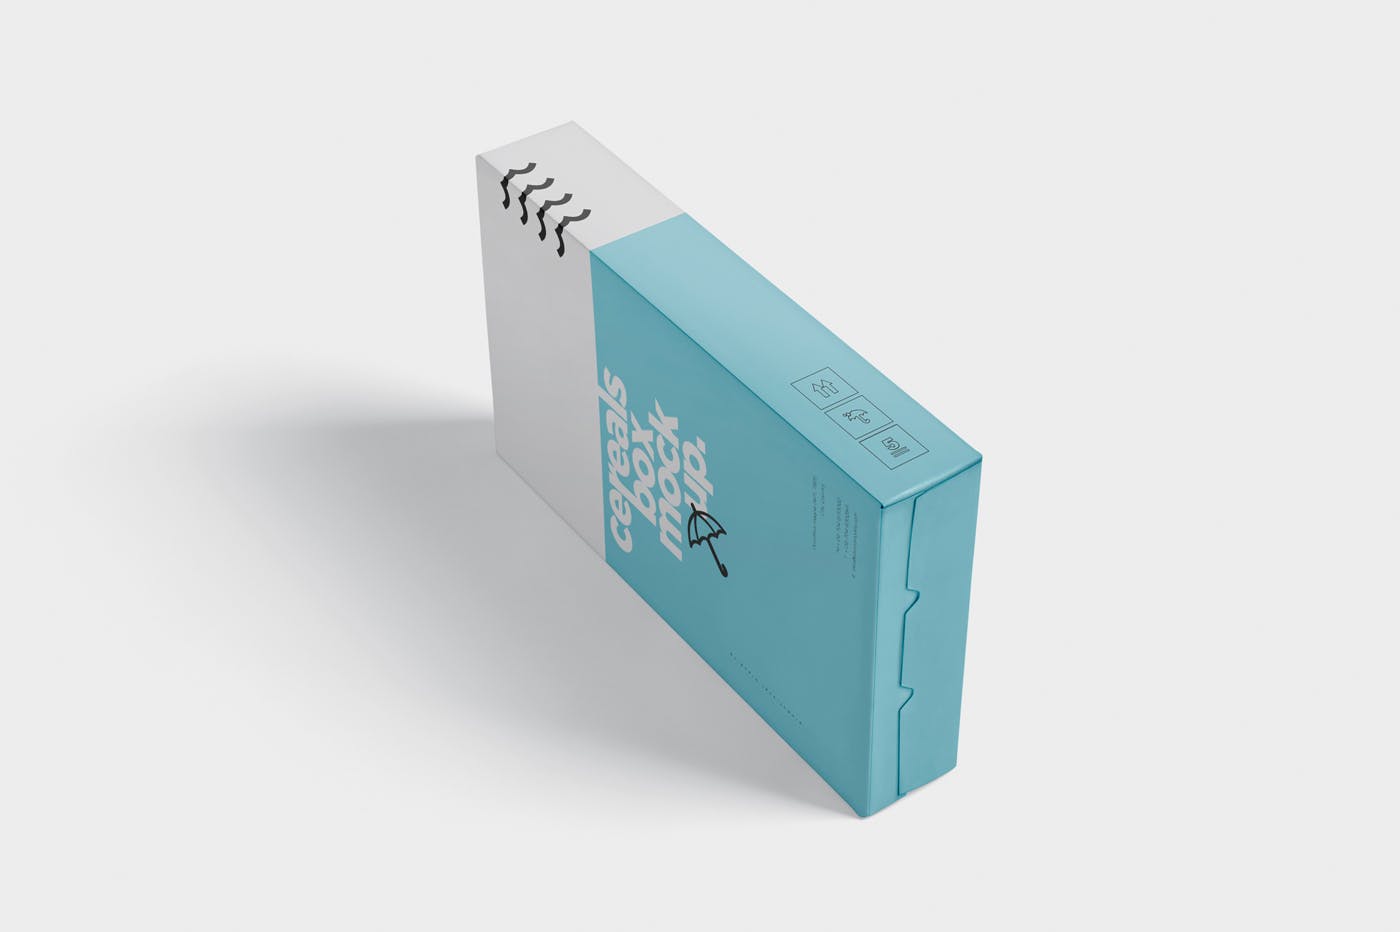 香烟/避孕套/扑克牌适用的超薄包装盒外观设计样机 Cereals Box Mockup – Slim Size Box插图(6)